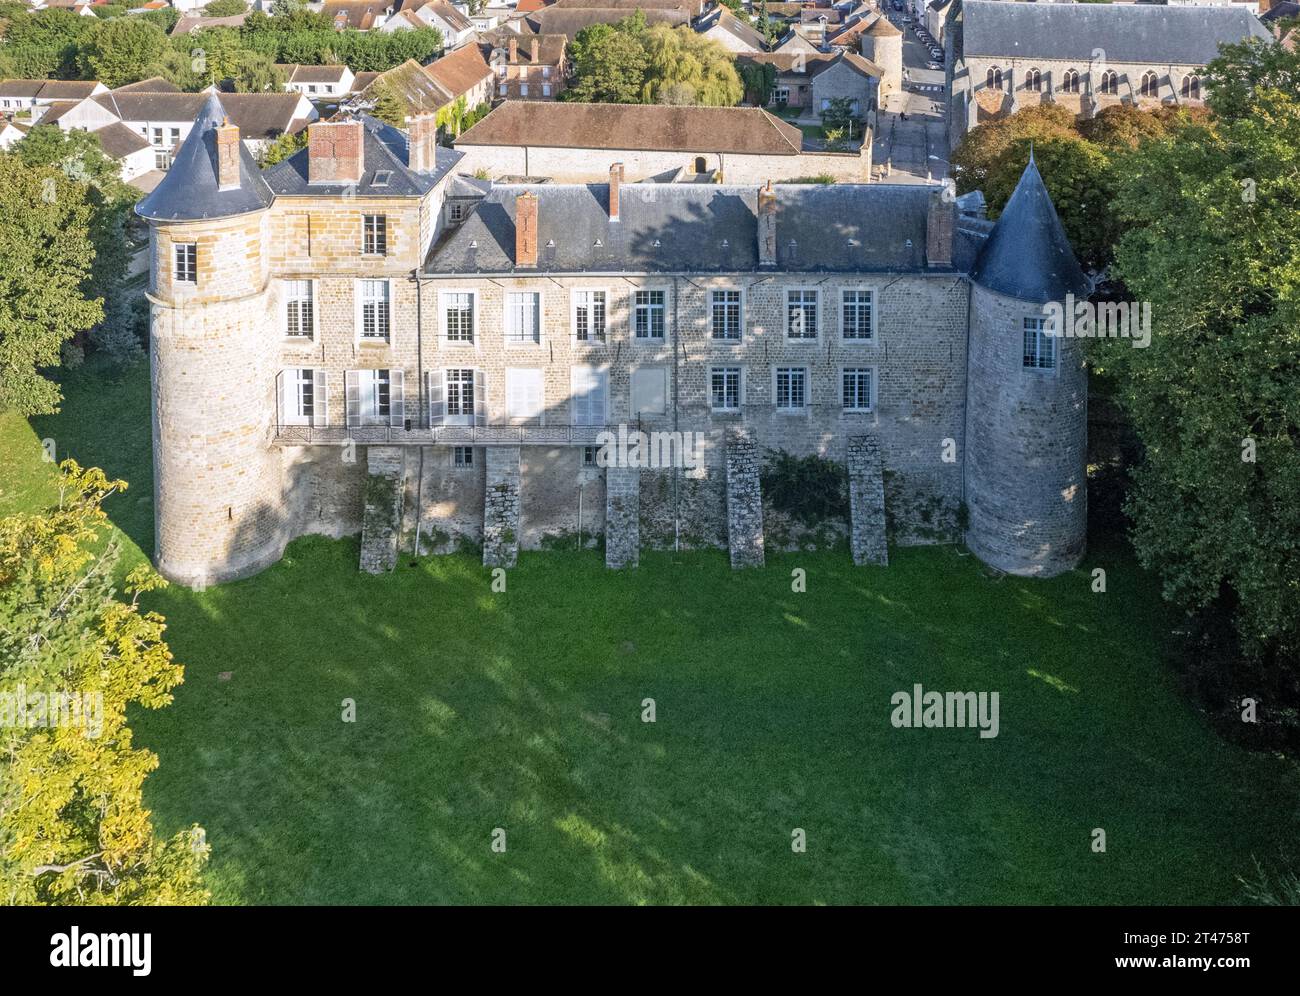 France, Seine-et-Marne (77), Nangis, Château de la Motte-Beauvoir ou Beauvais (vue aérienne) // France, Seine-et-Marne (77), Nangis, Château de la Mot Stock Photo